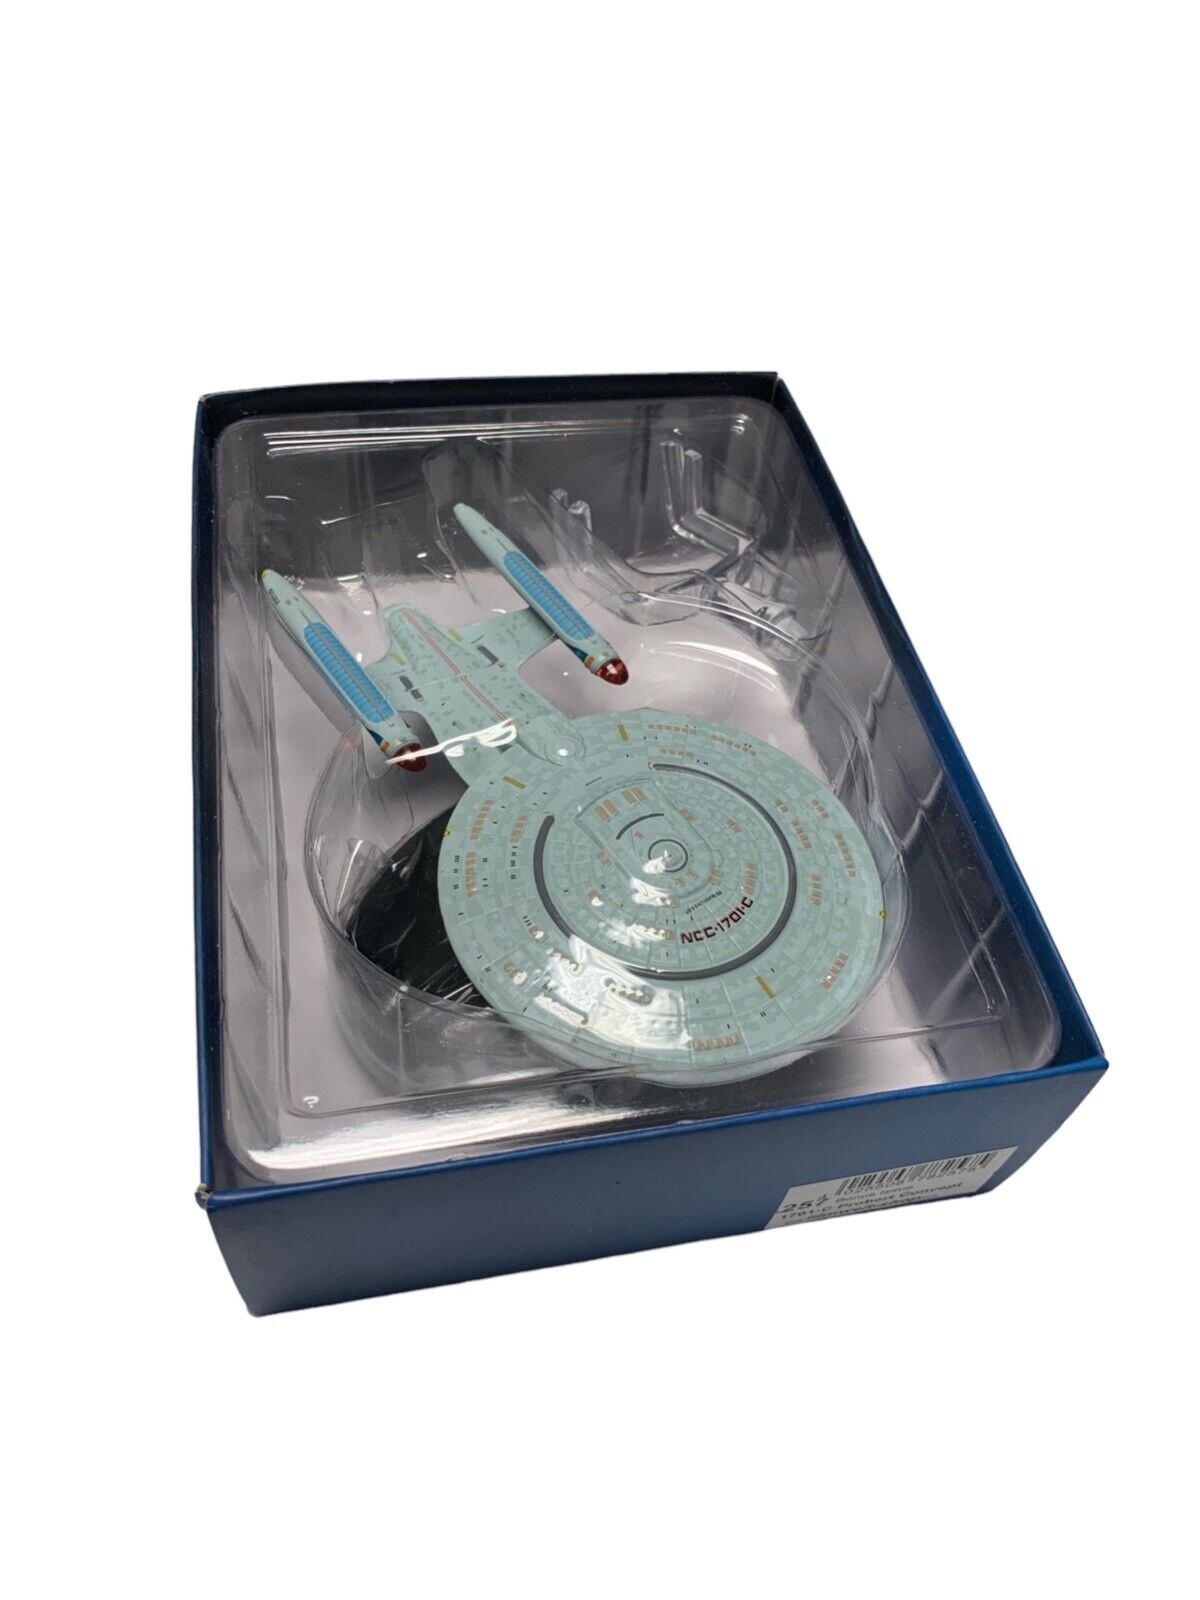 Enterprise 1701-C PROBERT CONCEPT  Star Trek Eaglemoss Bonus edition new in box